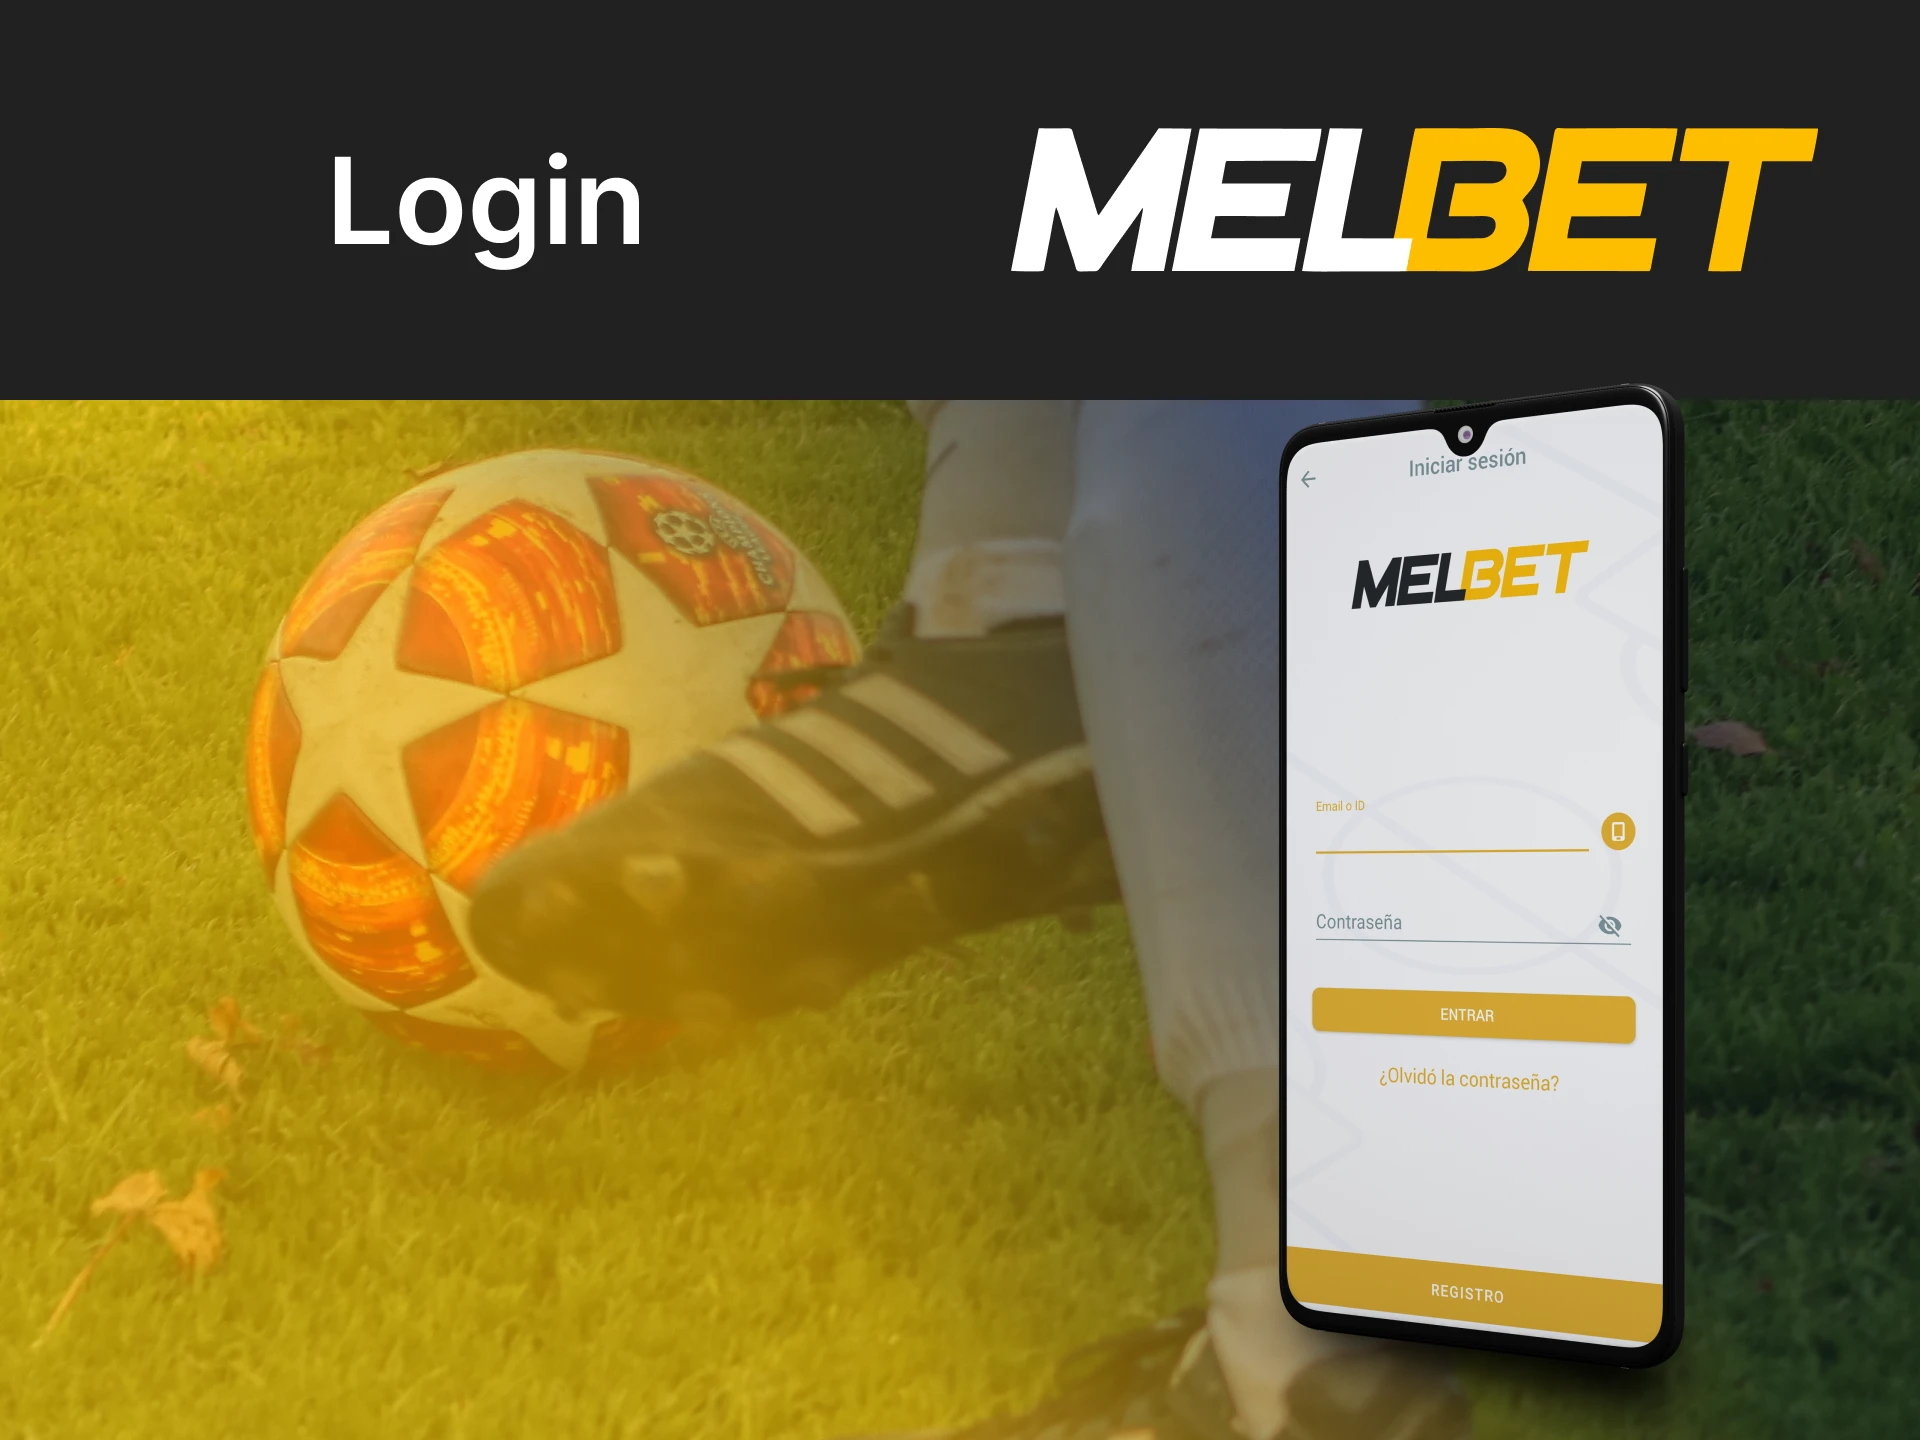 Faça login na sua conta existente através do aplicativo Melbet.